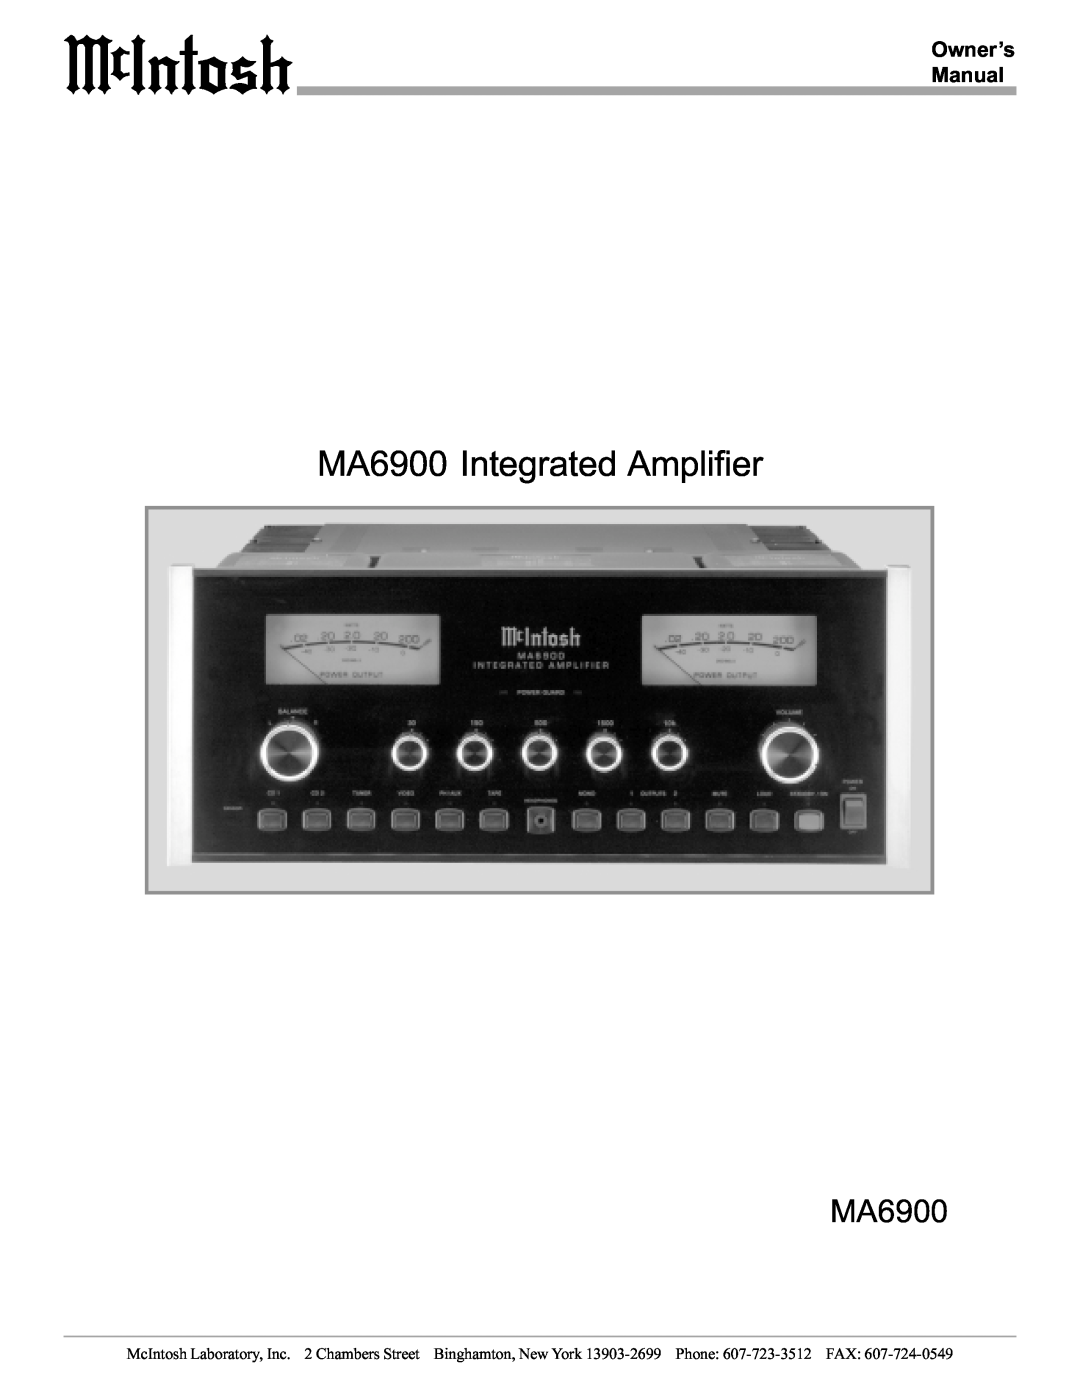 McIntosh manual MA6900 Integrated Amplifier 